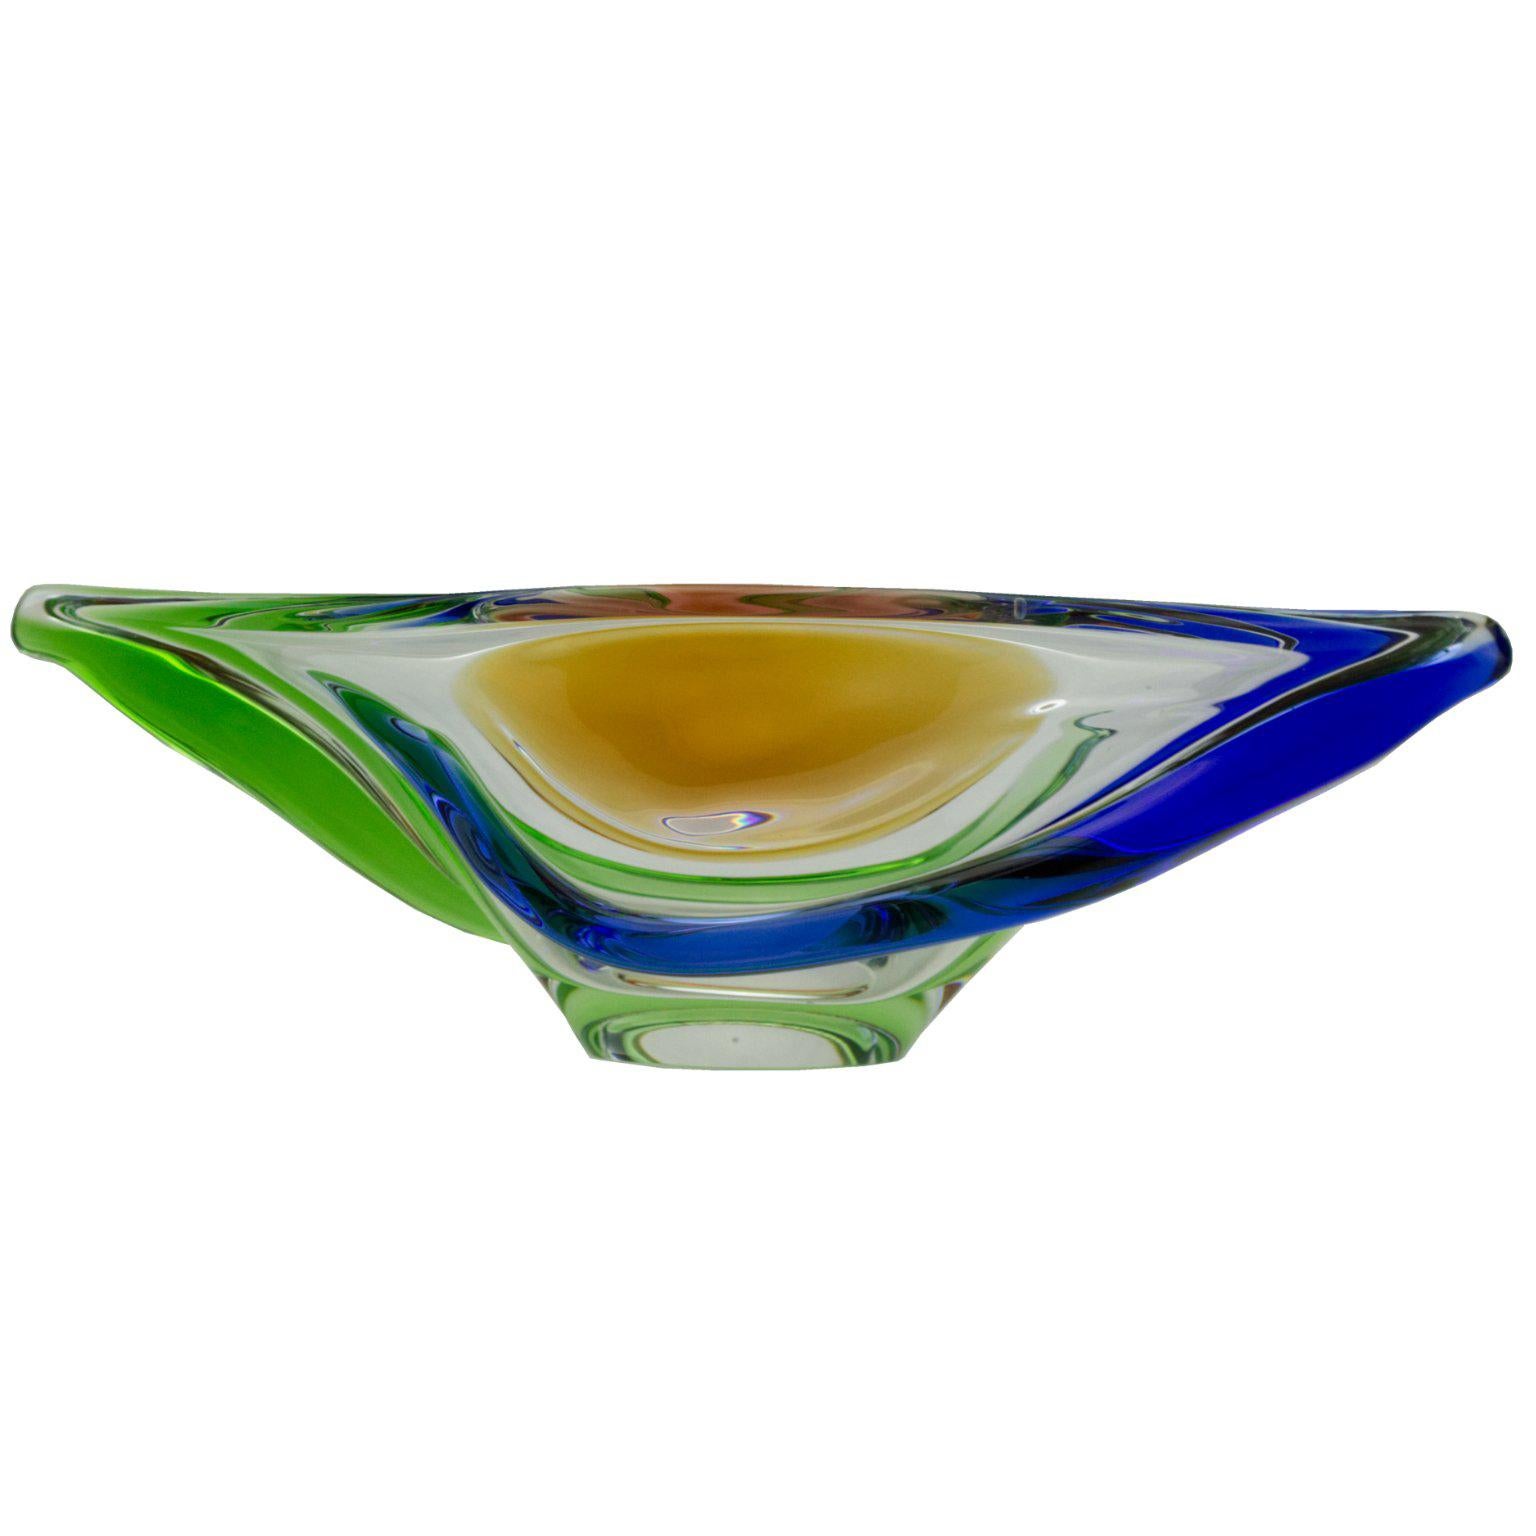 Czech Art Glass Bowl by Frantisek Zemek for Mstisov Glassworks, 1960